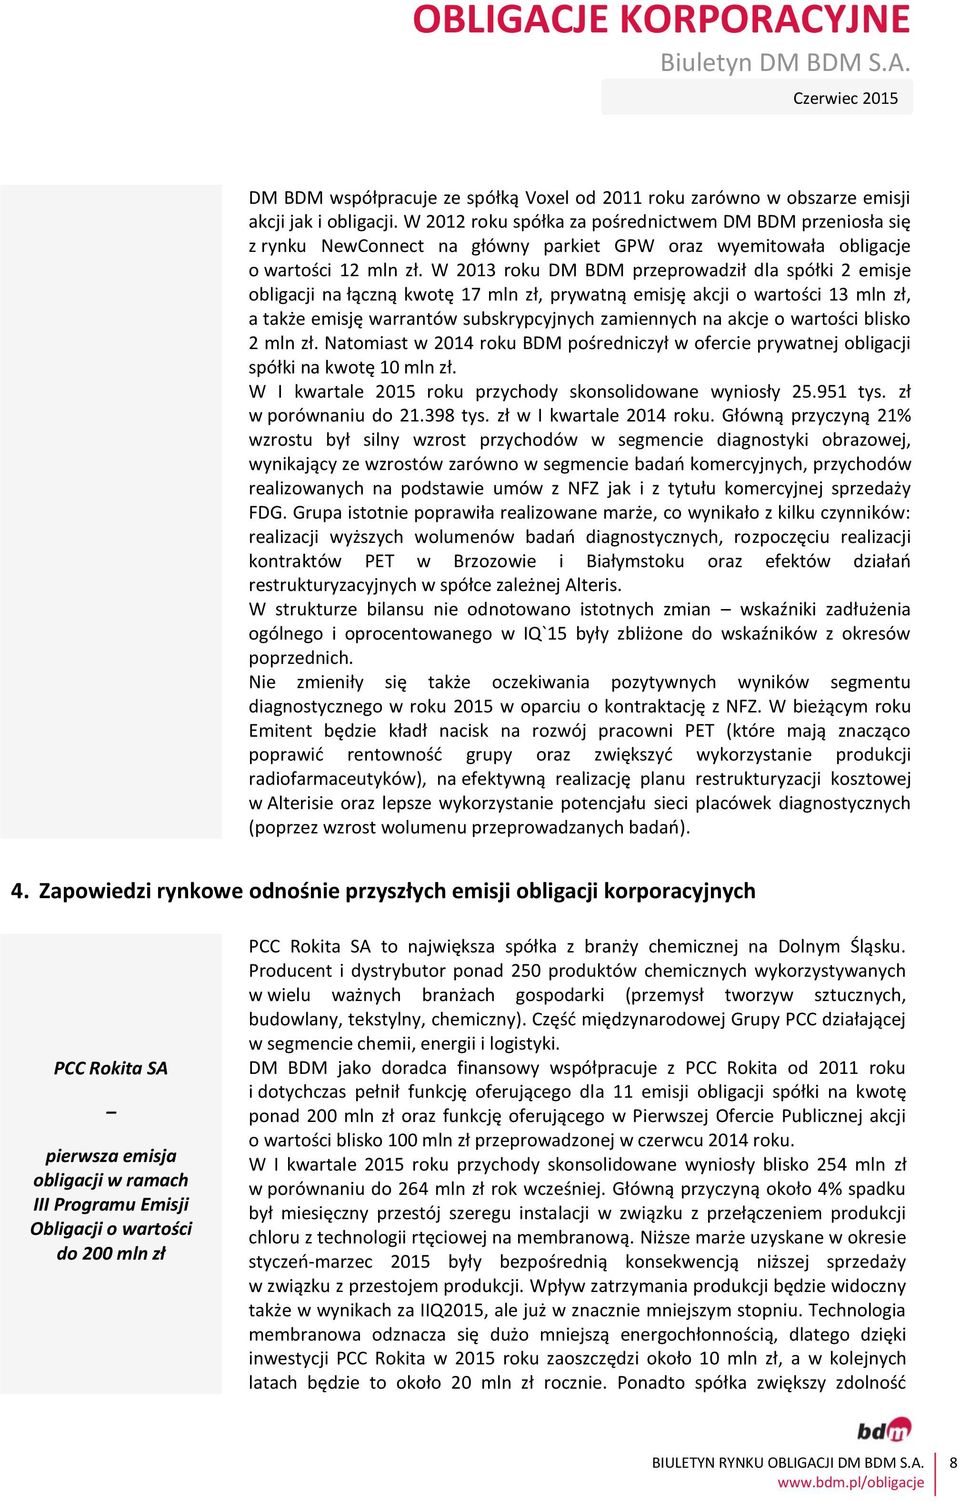 W 2013 roku DM BDM przeprowadził dla spółki 2 emisje obligacji na łączną kwotę 17 mln zł, prywatną emisję akcji o wartości 13 mln zł, a także emisję warrantów subskrypcyjnych zamiennych na akcje o